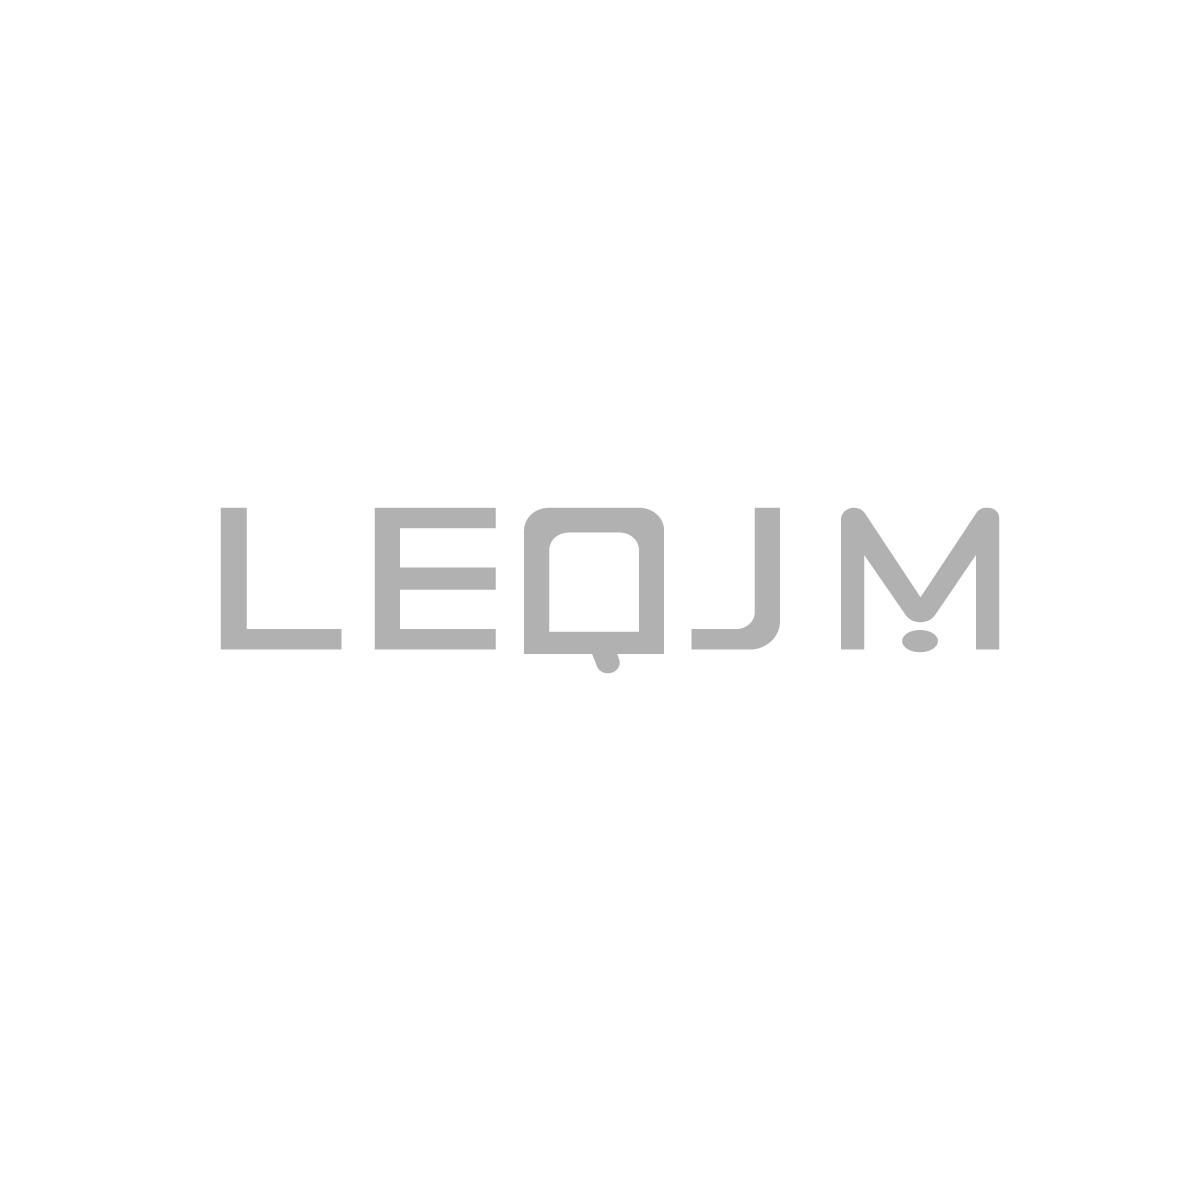 36类-金融保险LEQJM商标转让